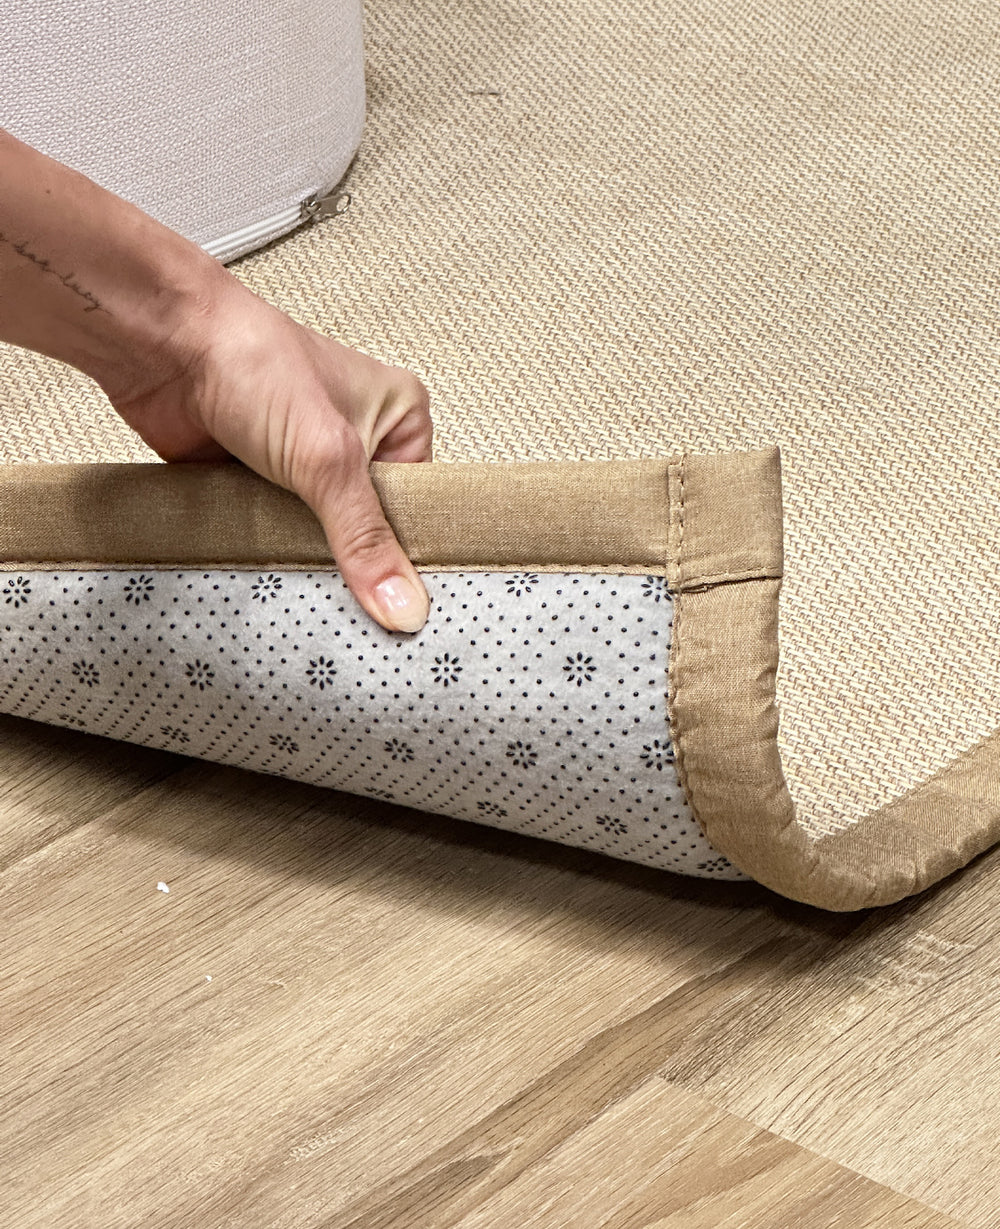 שטיח טאטאמי במבוק 90*180 - במכירה מוקדמת